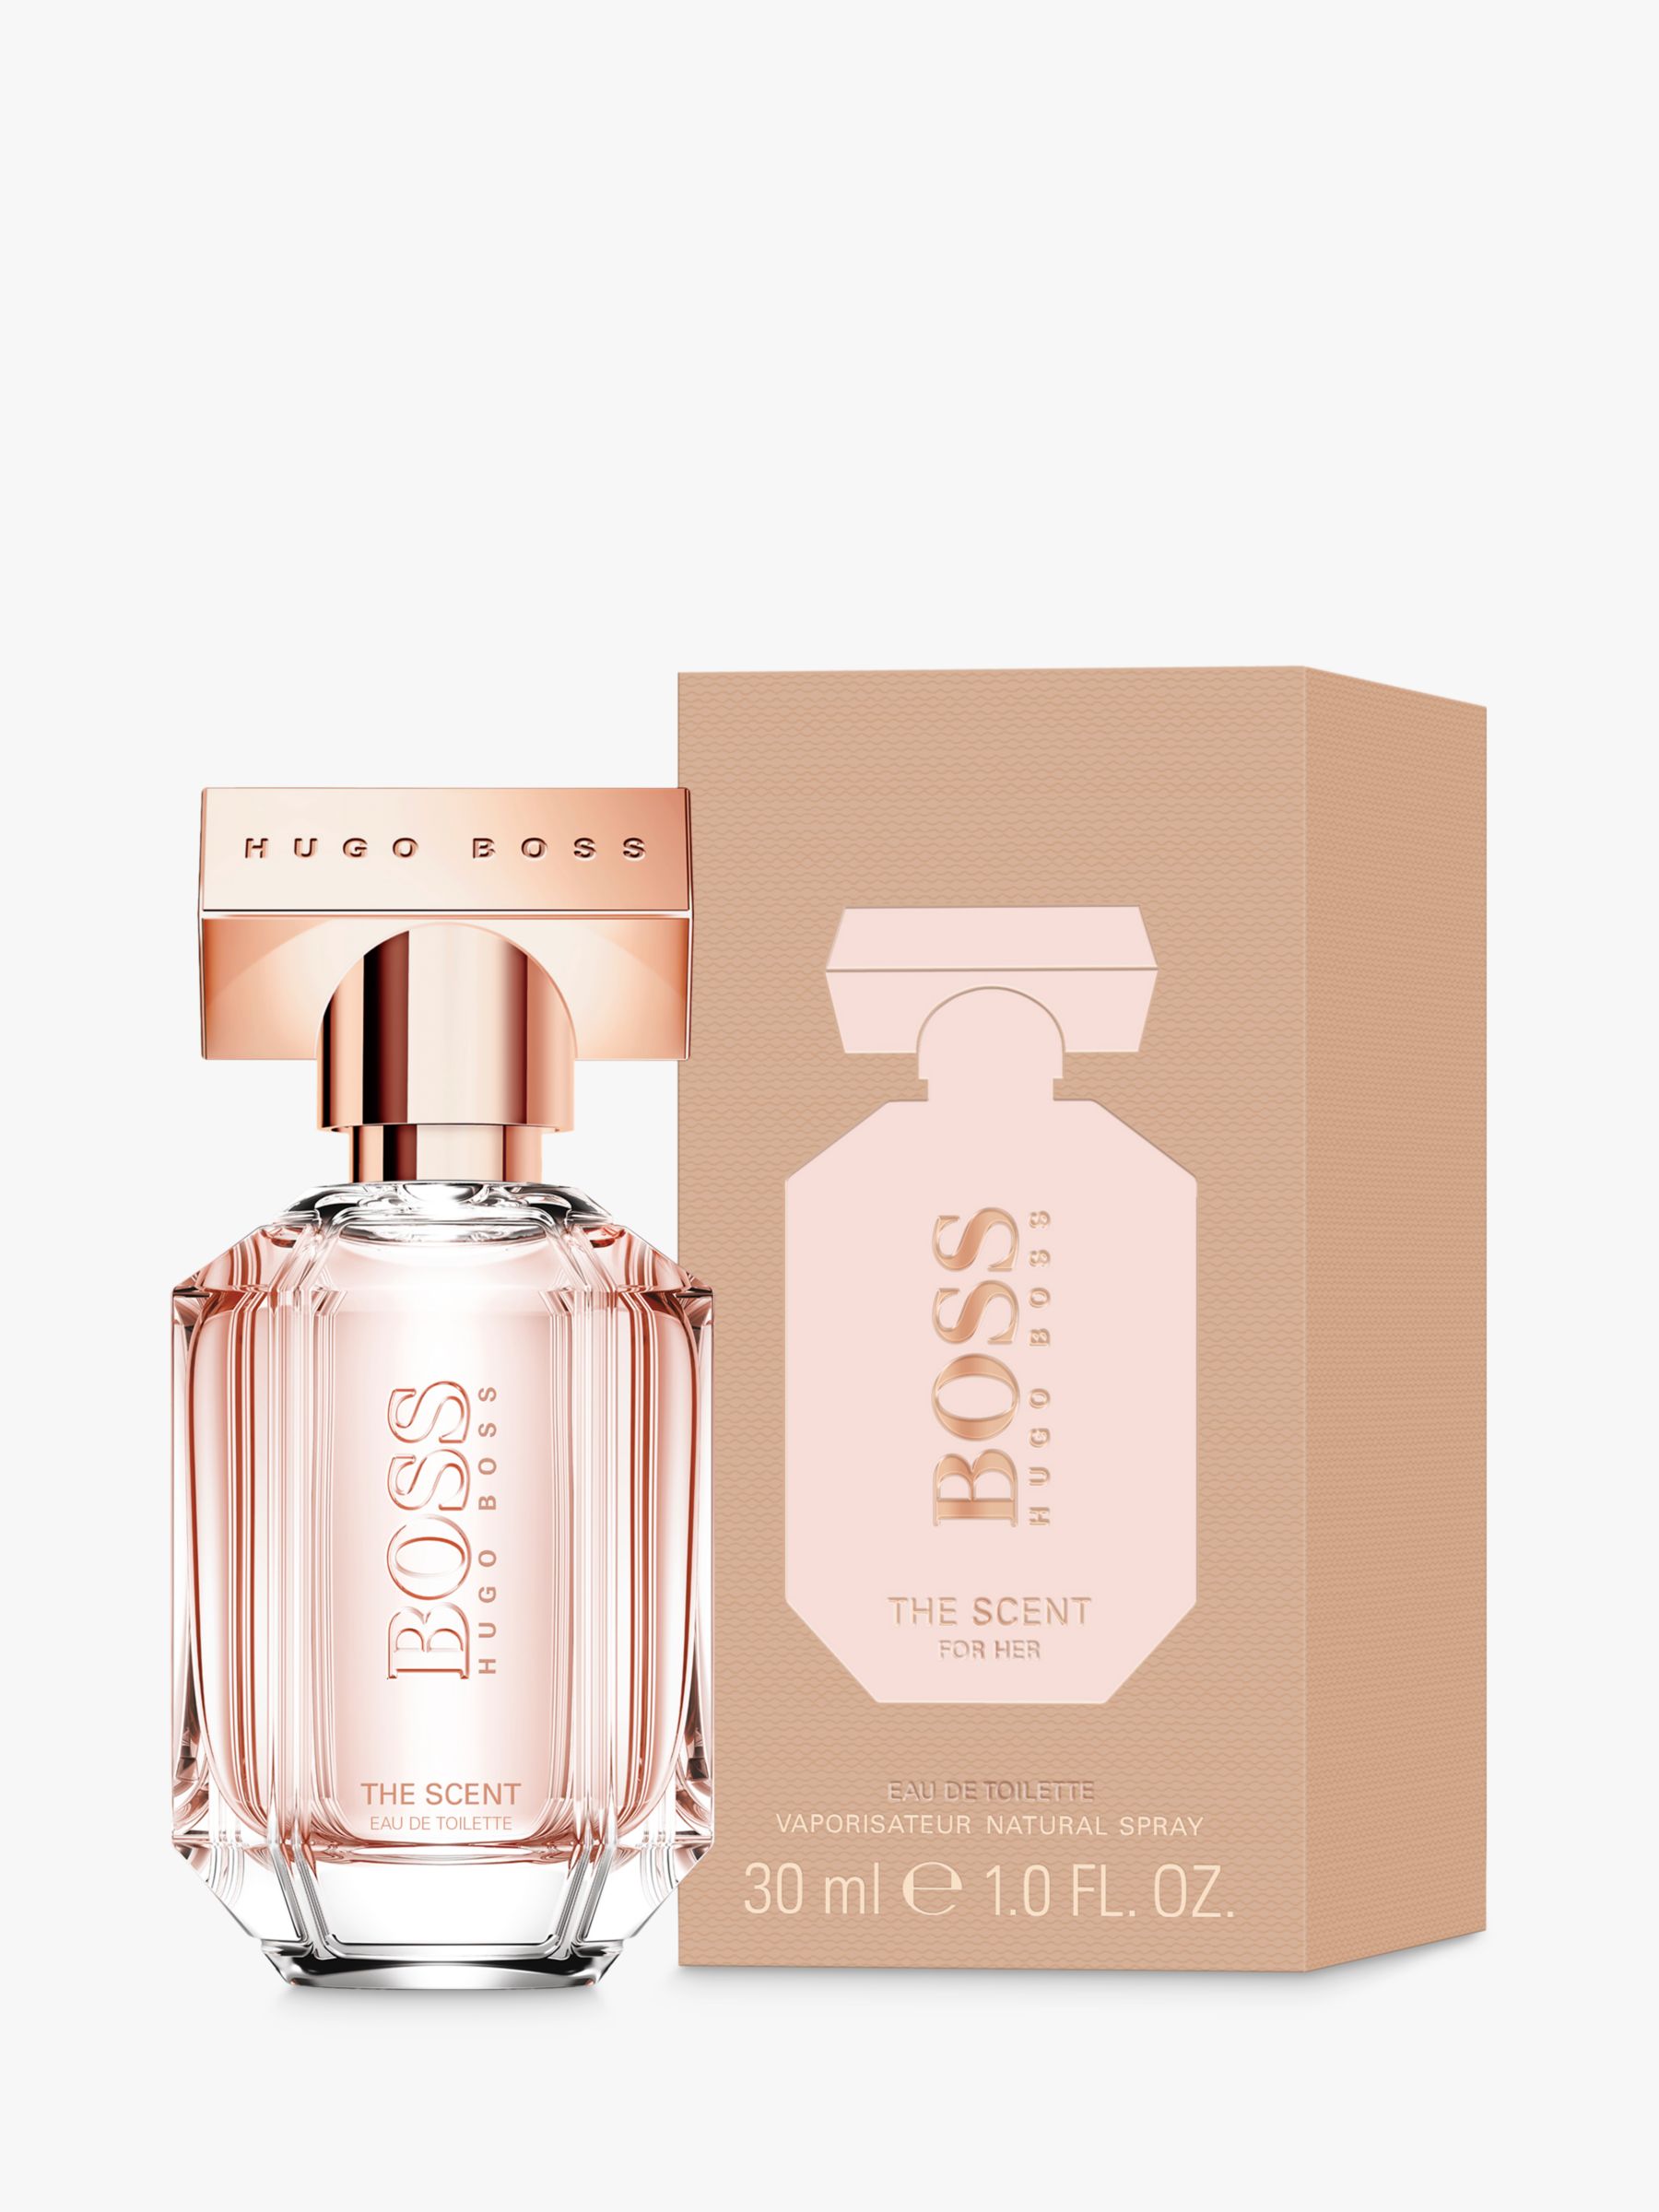 hugo boss women perfum